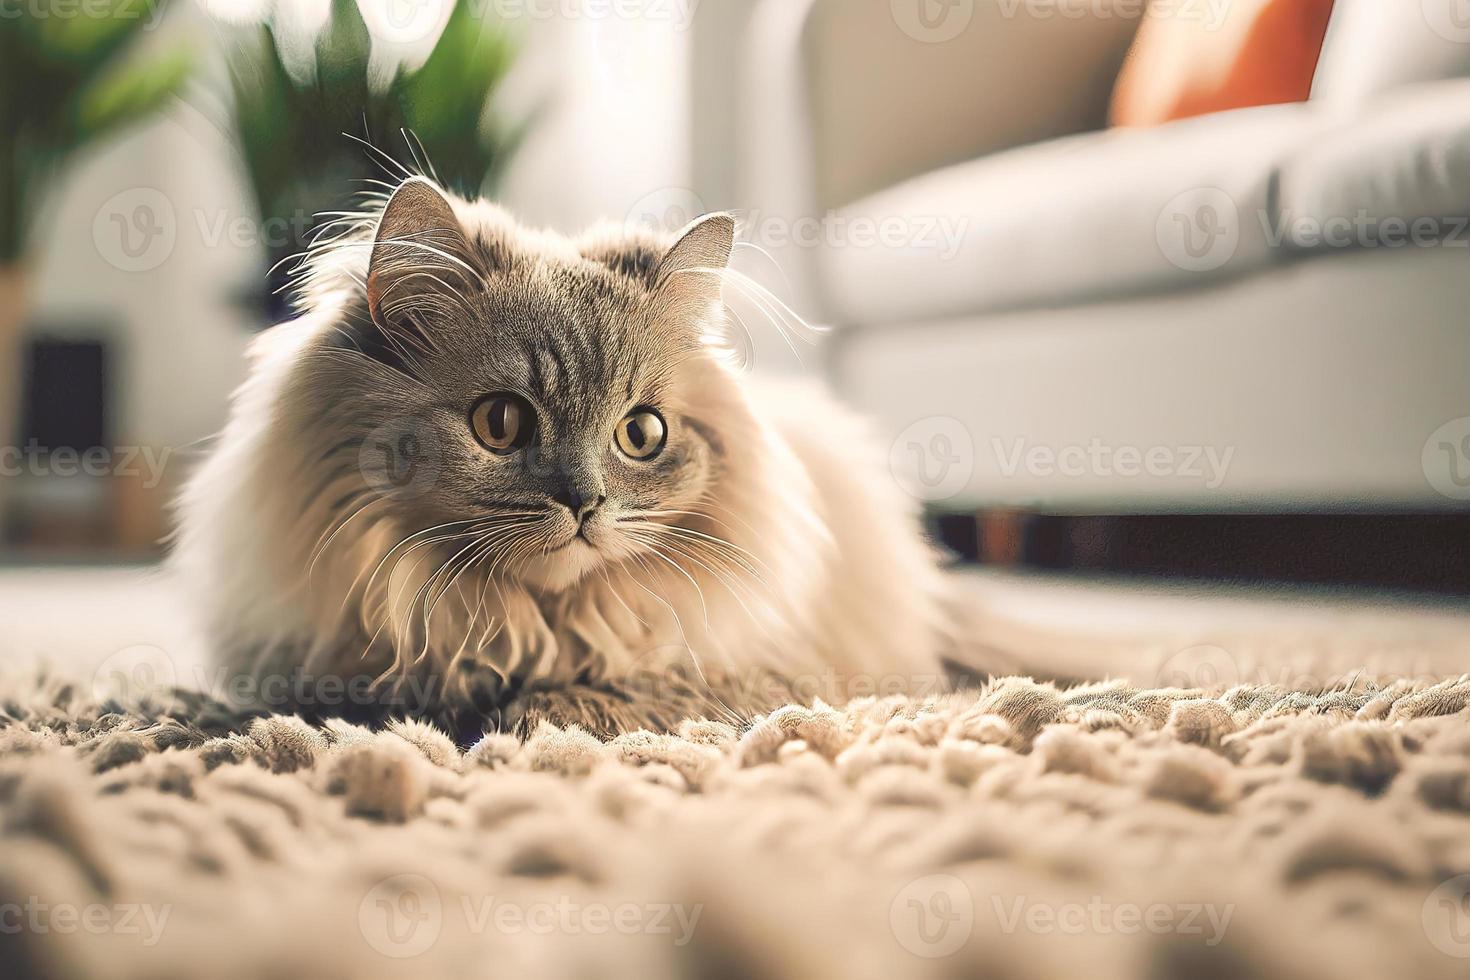 close-up de um gato aconchegante descansando em um tapete, contra um fundo de sala de estar em tons de branco. foto